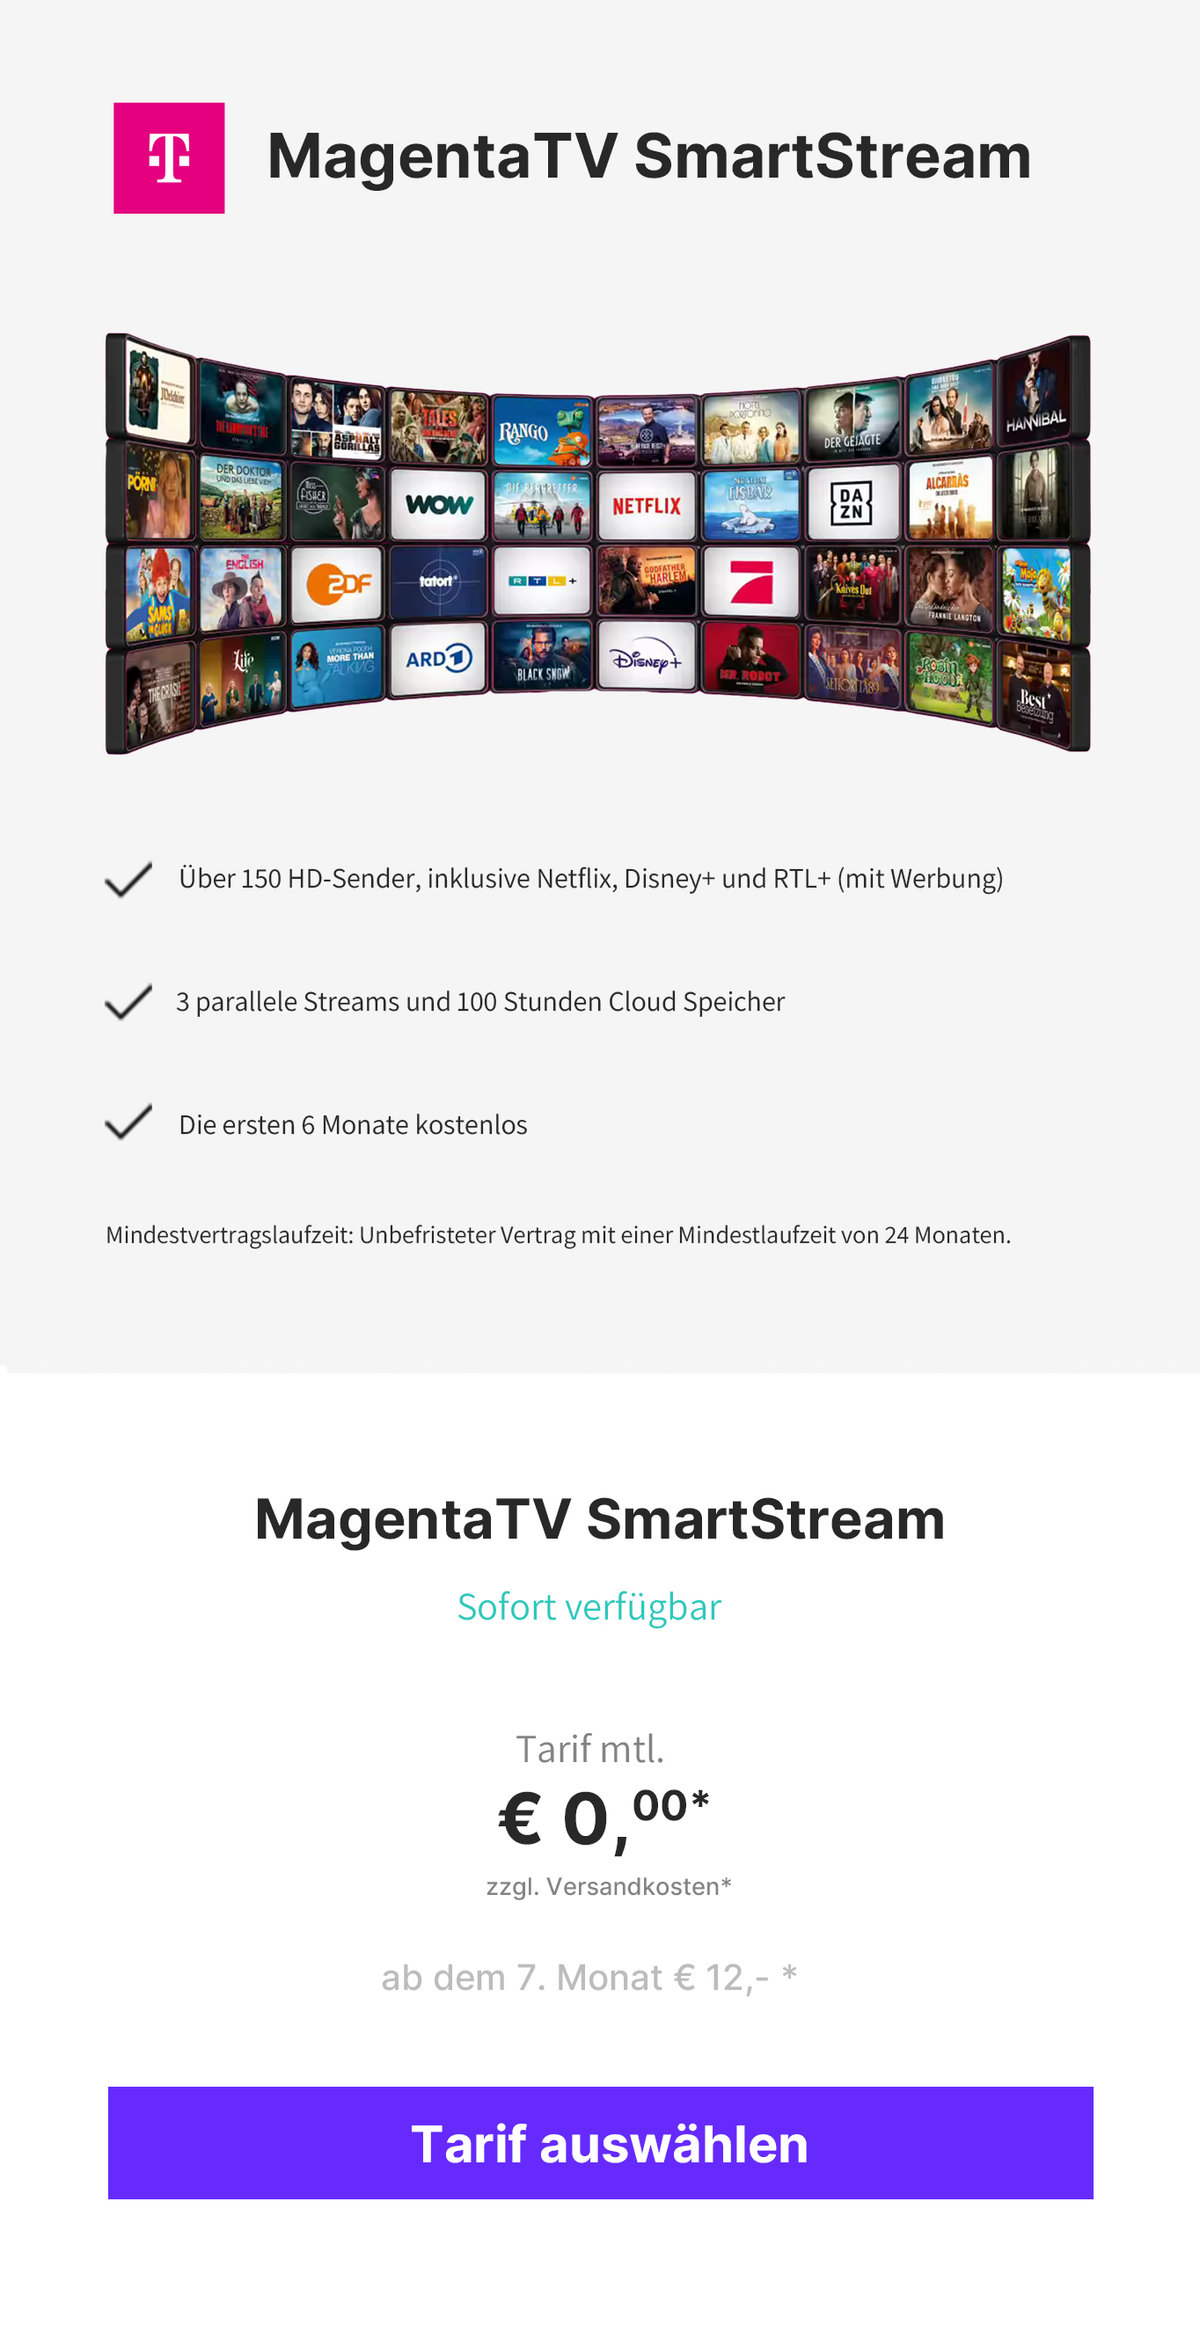 MagentaTV SmartStream 12€ Deal